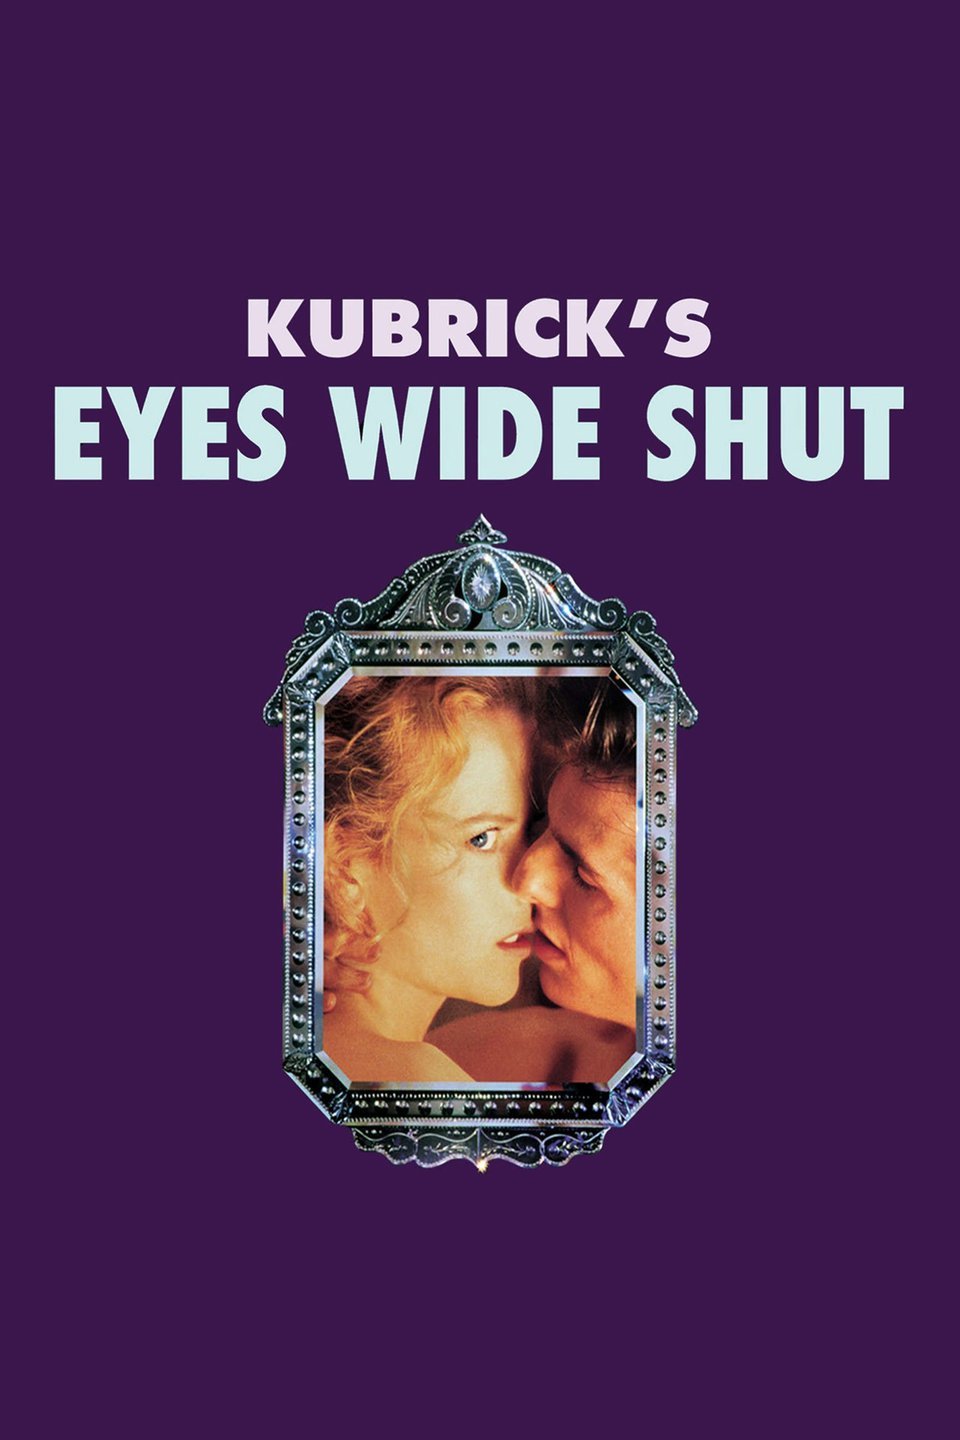 [ฝรั่ง] Eyes Wide Shut (1999) พิษราคะ [1080p] [พากย์อังกฤษ 5.1] [Soundtrack บรรยายไทย] [เสียงอังกฤษ + ซับไทย] [ONE2UP]